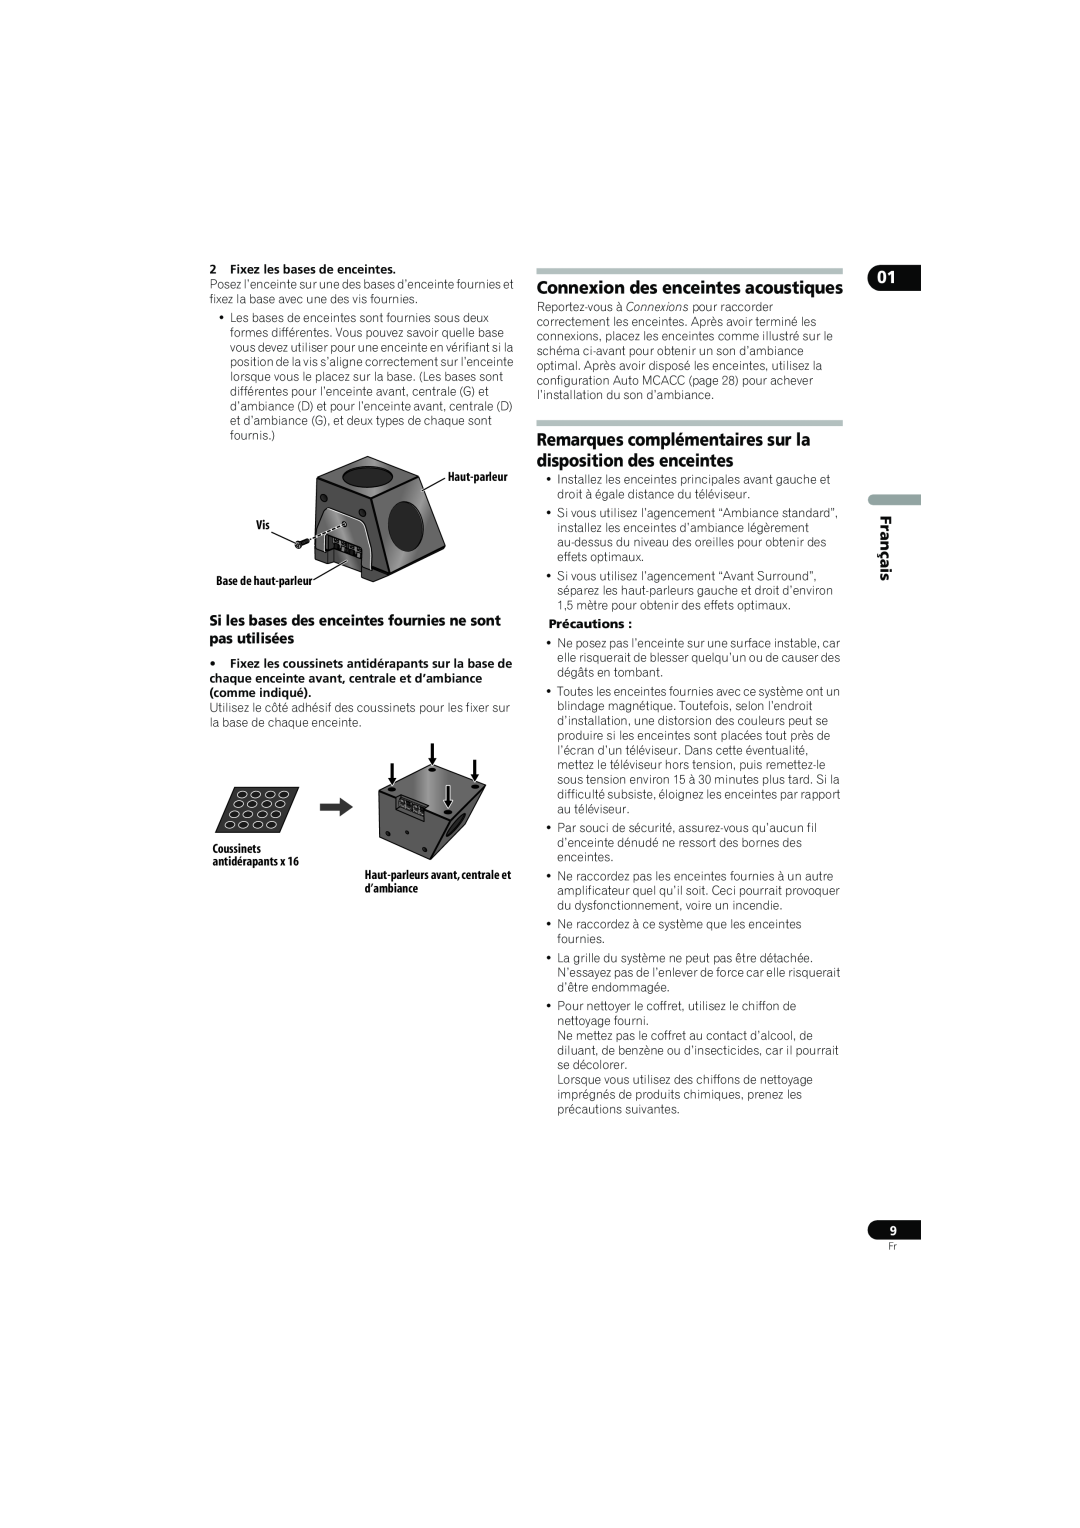 Pioneer SX-LX70SW Connexion des enceintes acoustiques, Remarques complémentaires sur la disposition des enceintes 